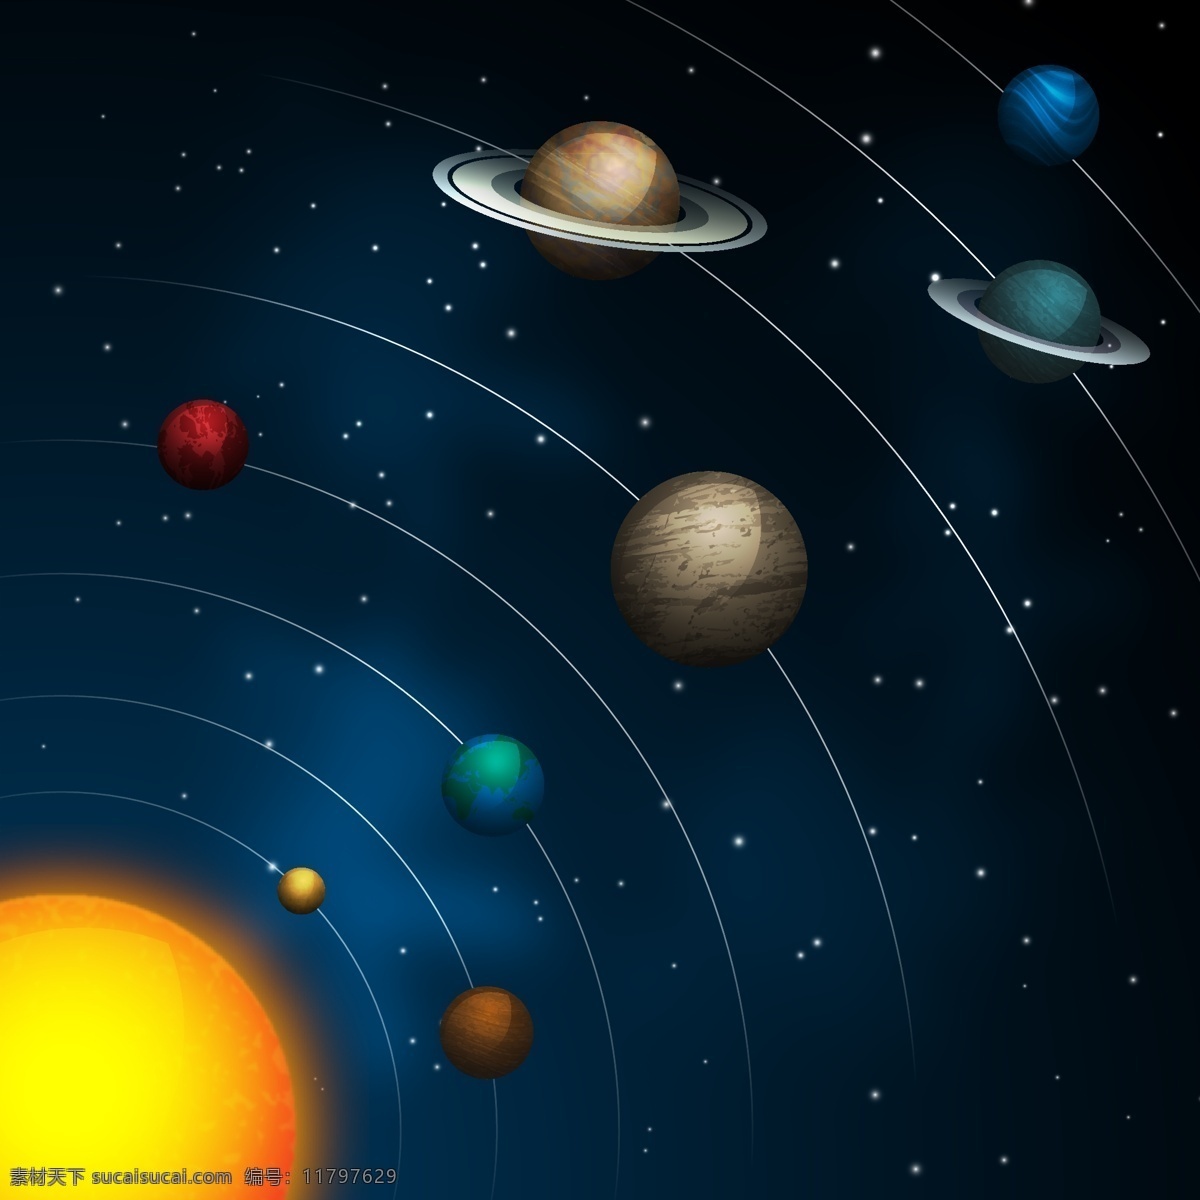 太阳系行星图 地球 火星 金星 水星 太阳系 星系 行星 宇宙 太阳星系 空间站 外层空间 太阳能系统 9大行星 冥王星 木星 土星 海王星 宇宙空间 矢量图 现代科技